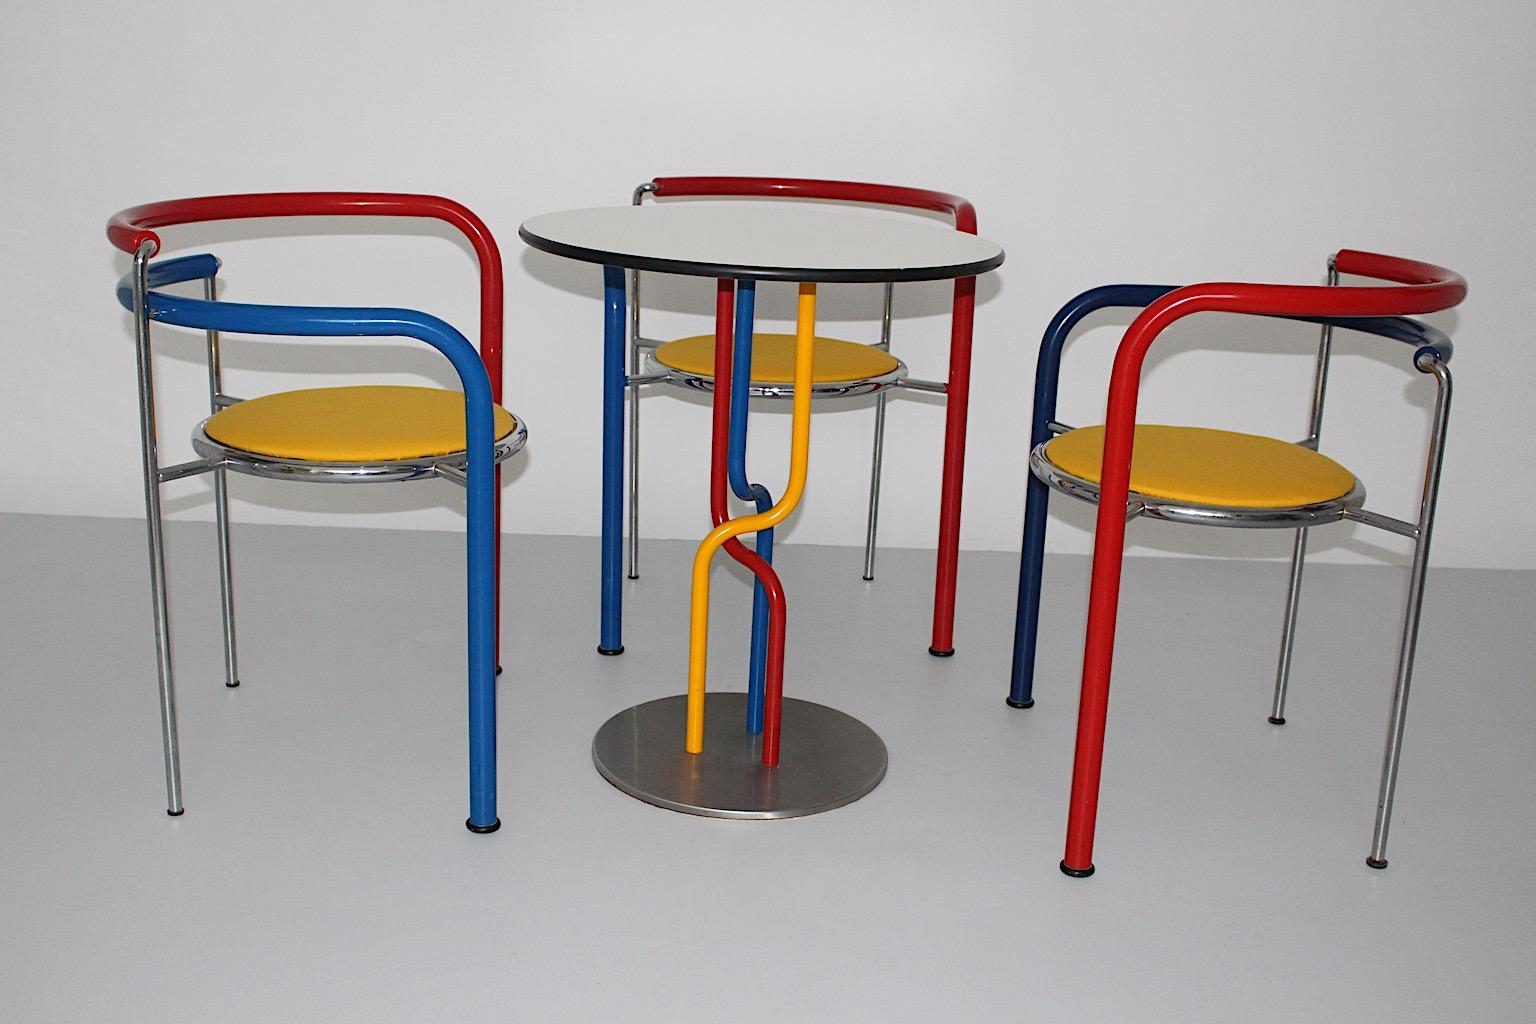 Pop-Art  mehrfarbig vintage drei ( 3 )  Esszimmerstühle mit einem ( 1 ) Tisch  Modell Dark Horse, entworfen von Rud Thygesen & Johnny Sorensen für Botium, Dänemark, ca. 1989.
Ein atemberaubendes Set mit bunten Stühlen und Tisch aus dem wilden